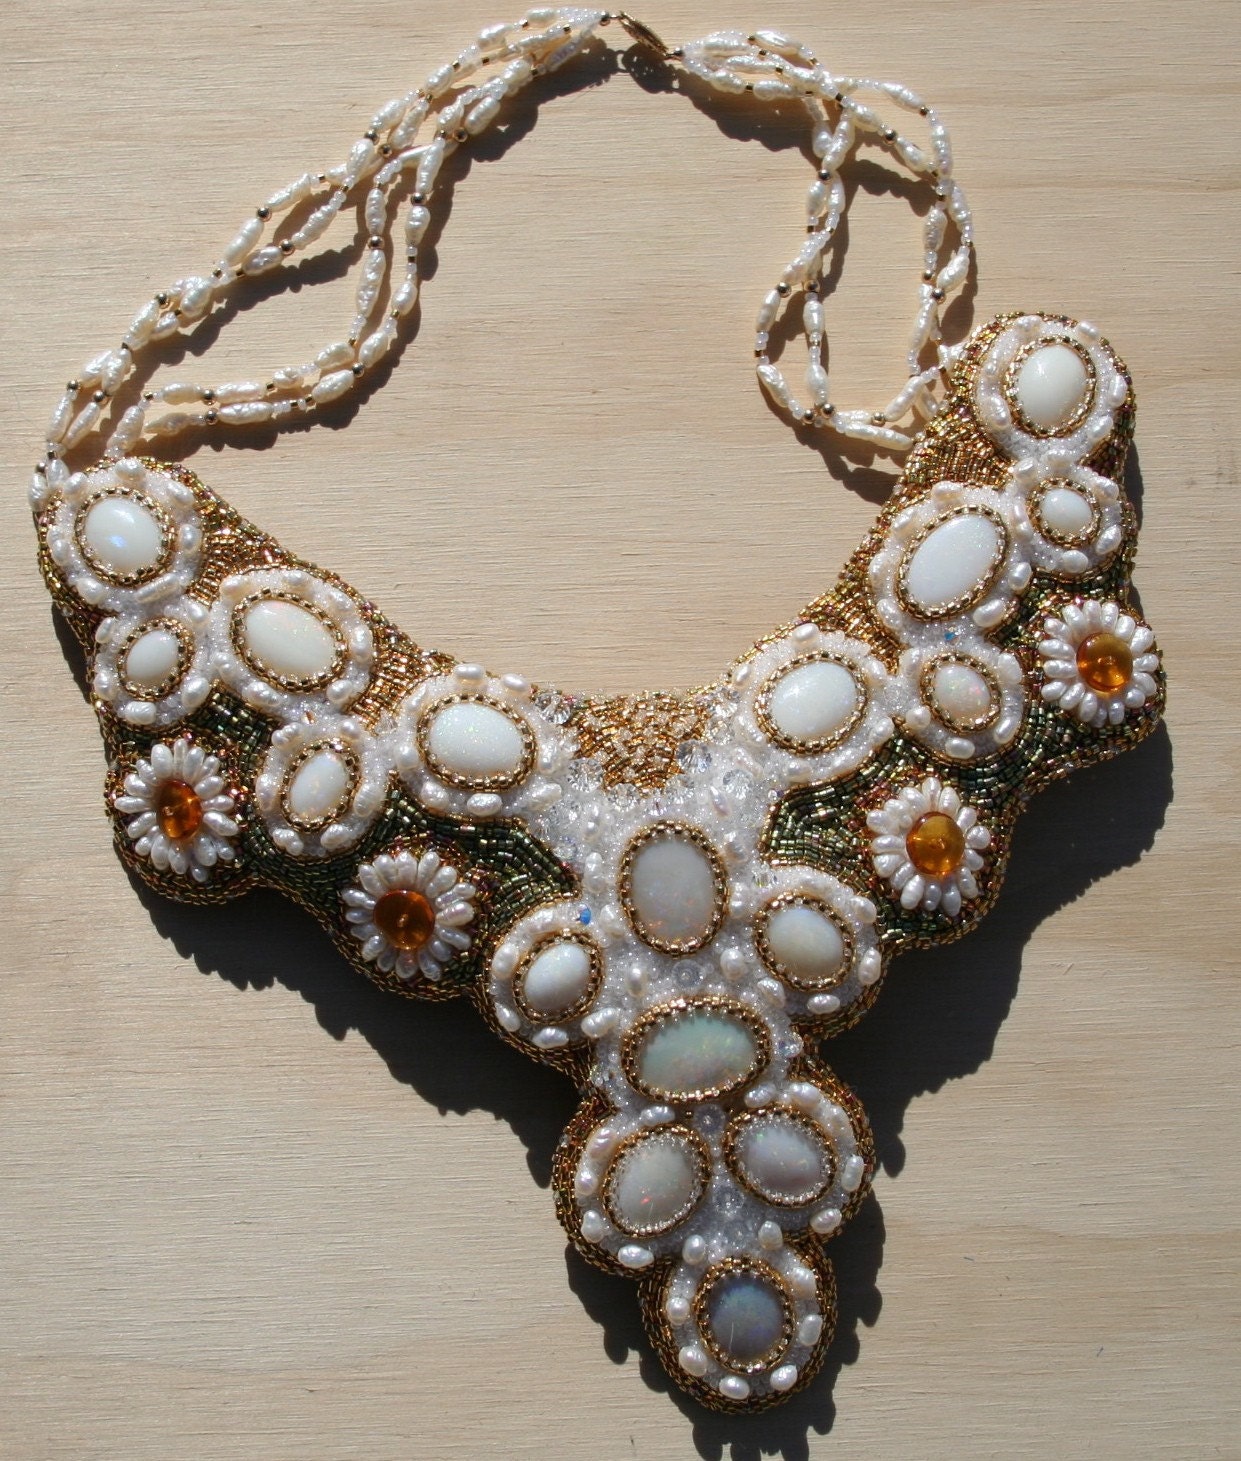 The Tsarina's Opal Collar Necklace